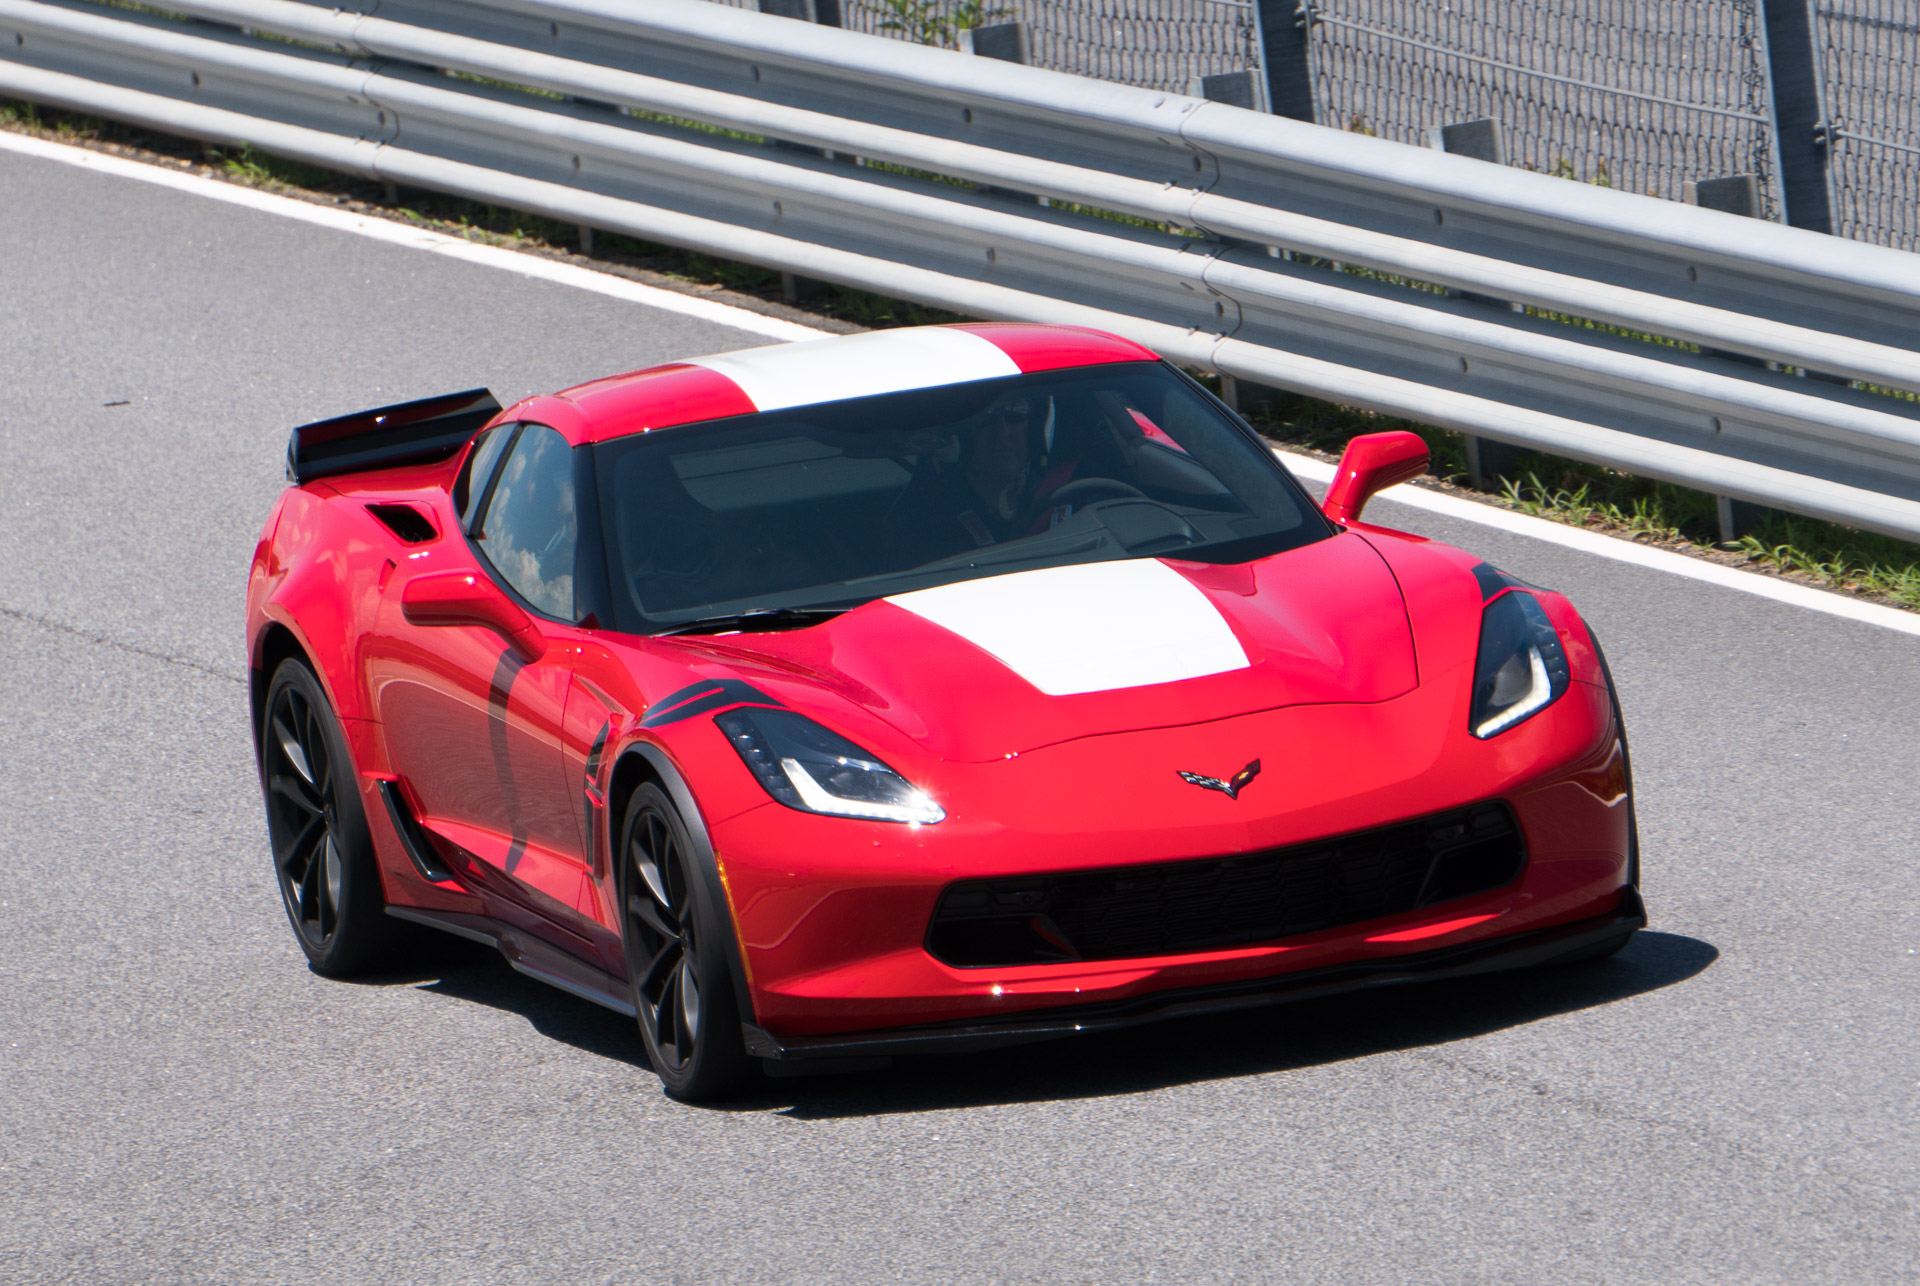 GM Document Hints at New DOHC LT5 V8 for Corvette